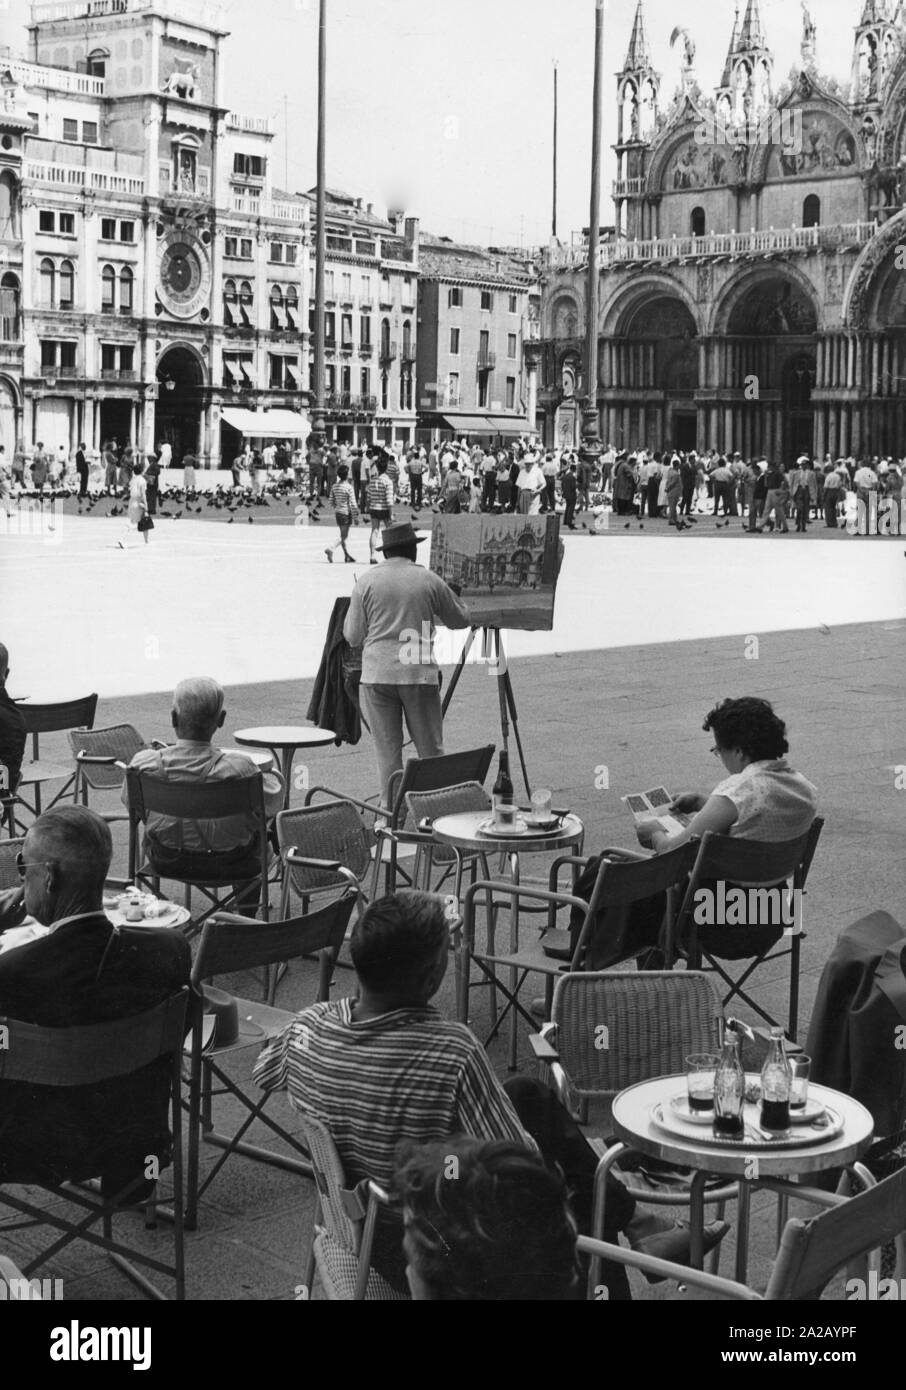 Am Markusplatz in Venedig, links der Hl. Markus Basilika, die Vielzahl von Passanten treiben. Gäste entspannen Sie in einem Cafe, während der Platz selbst und den umliegenden Gebäuden durch unzählige einheimische und exotische Besucher besucht werden. Ein Künstler fängt die Szene in einem Gemälde. Stockfoto